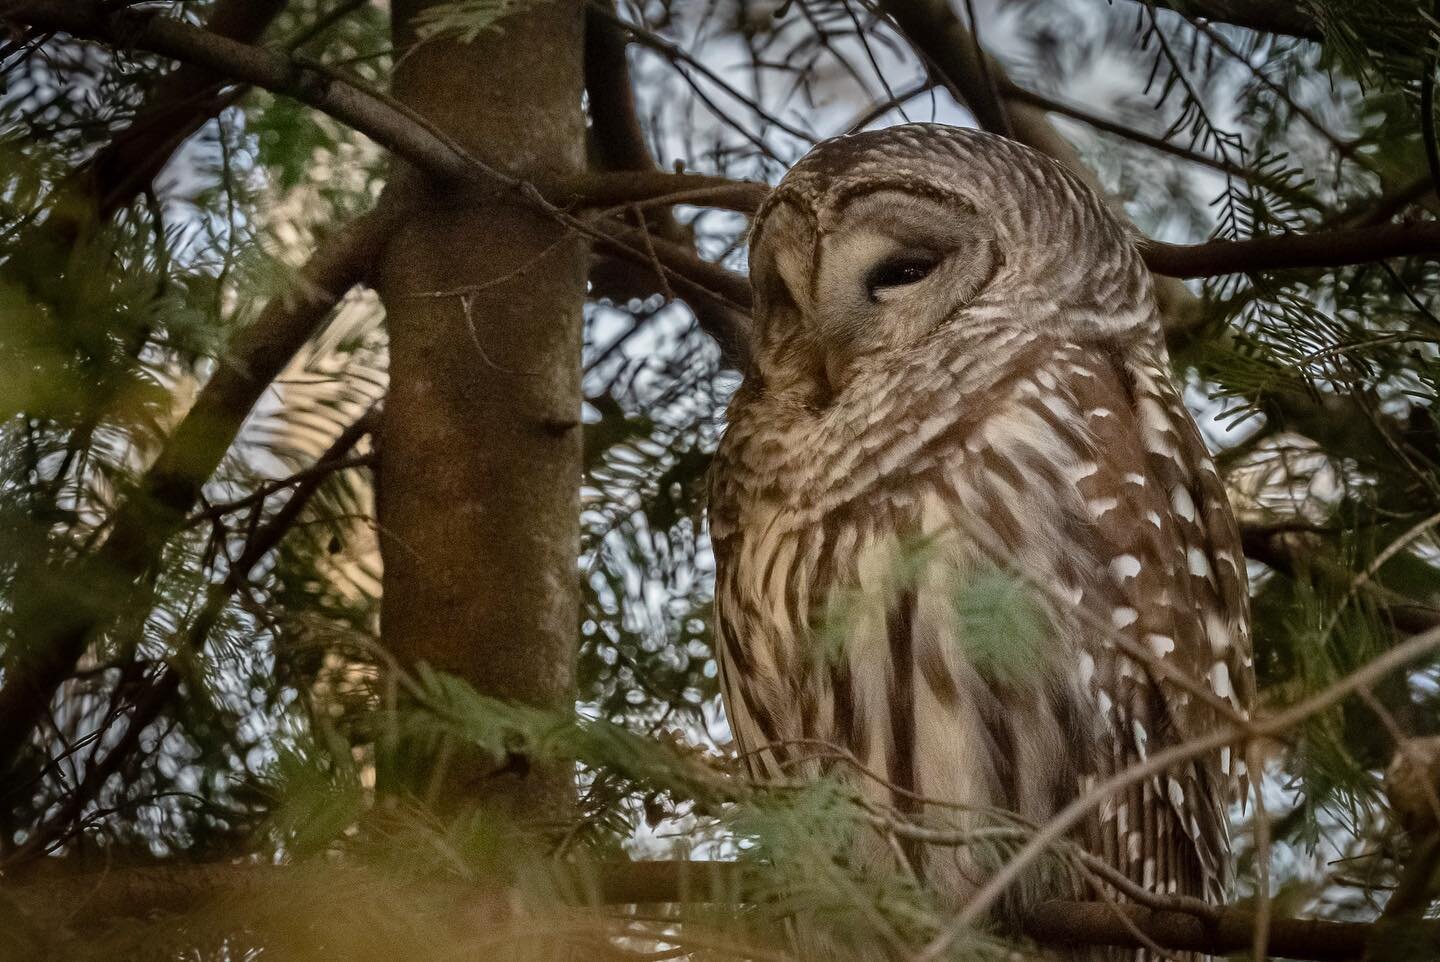 Owl spotting 🦉

#owl #barredowl #birding